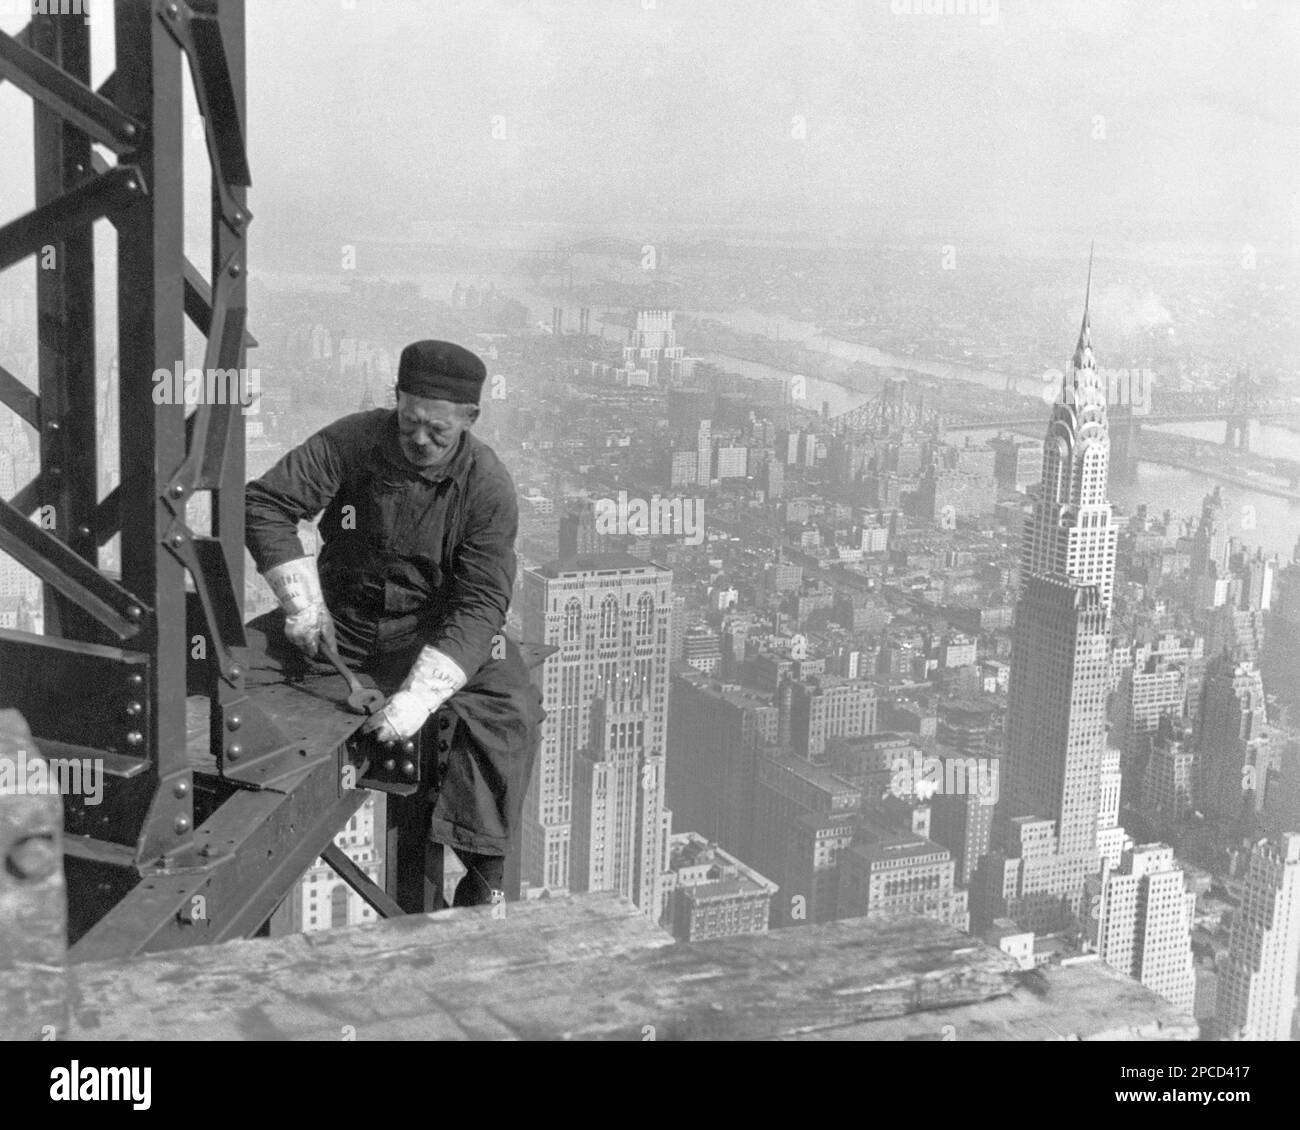 1930 , New York , NY , USA : ' Old-Timer, -- mit den Jungs Schritt halten . Viele Bauarbeiter sind älter als das mittlere Alter. Empire State Building ', Foto des gefeierten amerikanischen Fotografen und Soziologen LEWIS HINE ( 1874 - 1940 ) für die Work Projects Administration. Der US-Regierung. Hine benutzte seine Kamera als Werkzeug für soziale Reformen. - ALTER MANN - UOMO ANZIANO VECCHIO - LAVORO - WORK - LAVORATORE - ARBEITER - OPERAIO - CLASSE OPERAIA LAVORATRICE - ARBEITERKLASSE - OPERAI - LAVORATORI - LAVORO IN CANTIERE - TRAVI D' ACCIAIO - STAHL - GRATTACIELO - PANORAMA - VERTIGO - VERTIGO - VERTIGO - Stockfoto